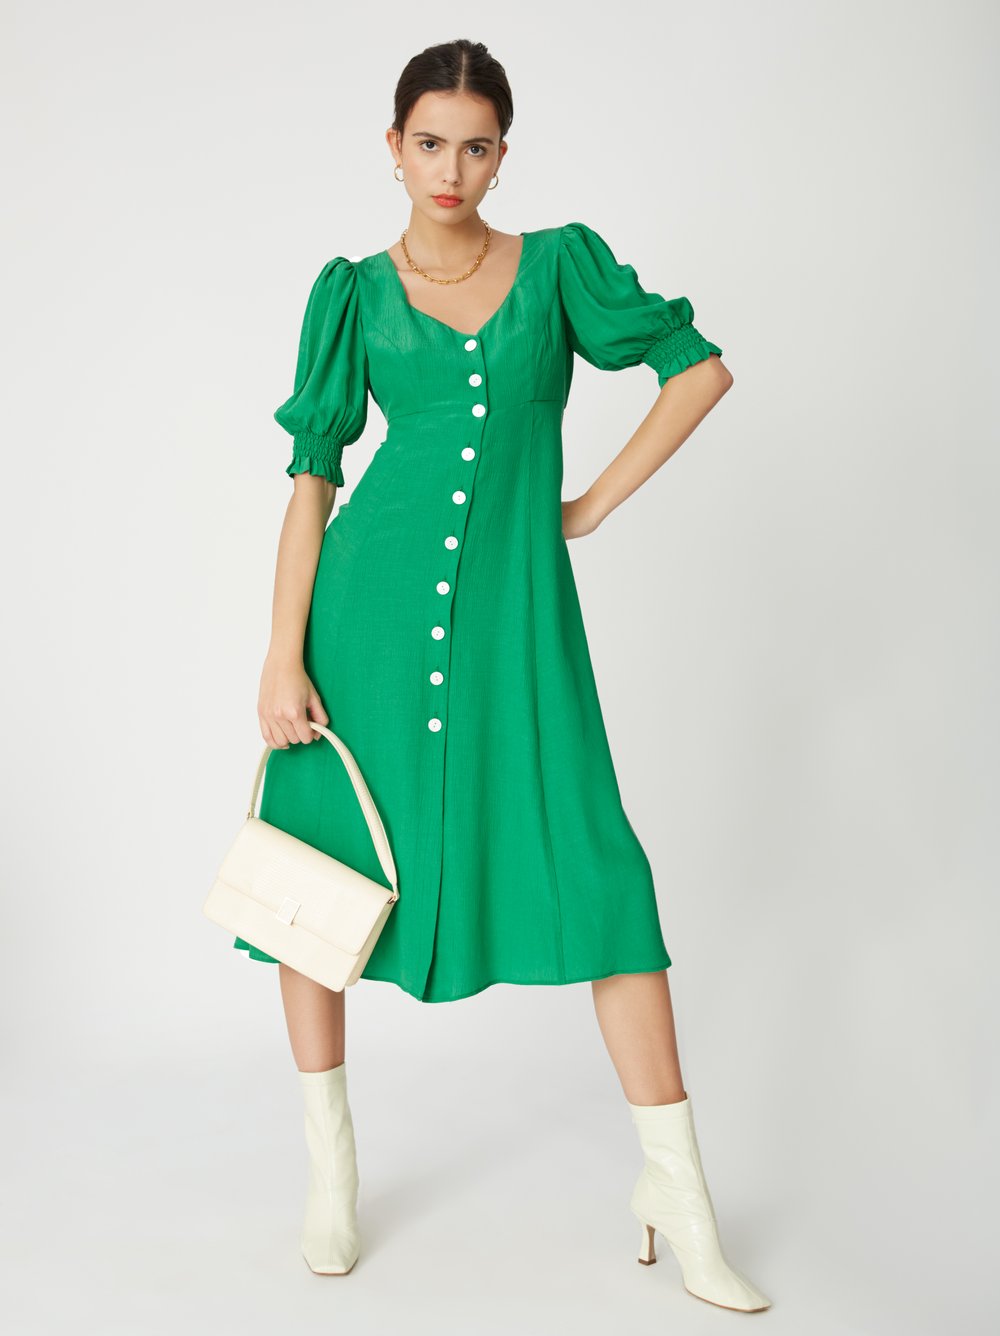 green tea dress